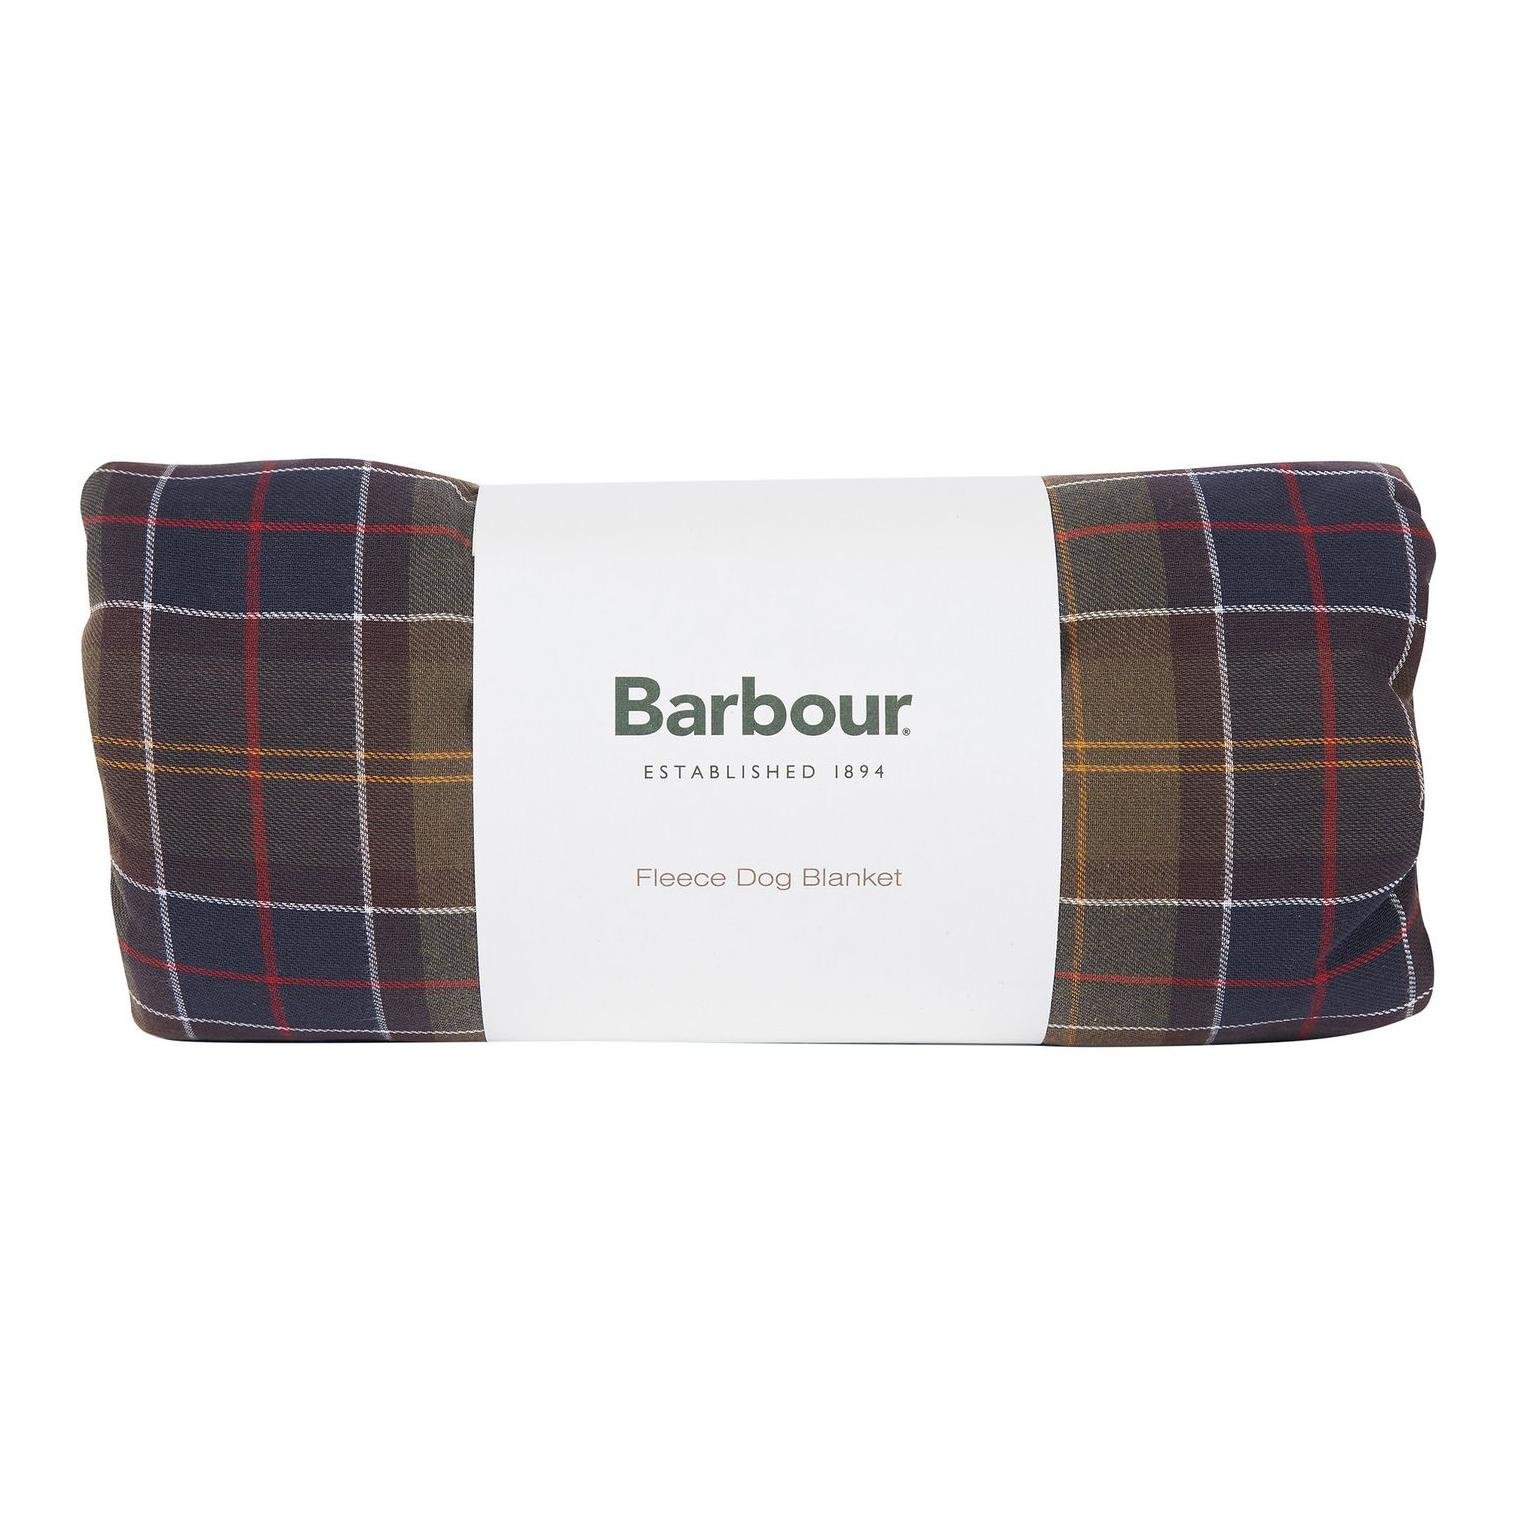 Barbour Dog Blanket